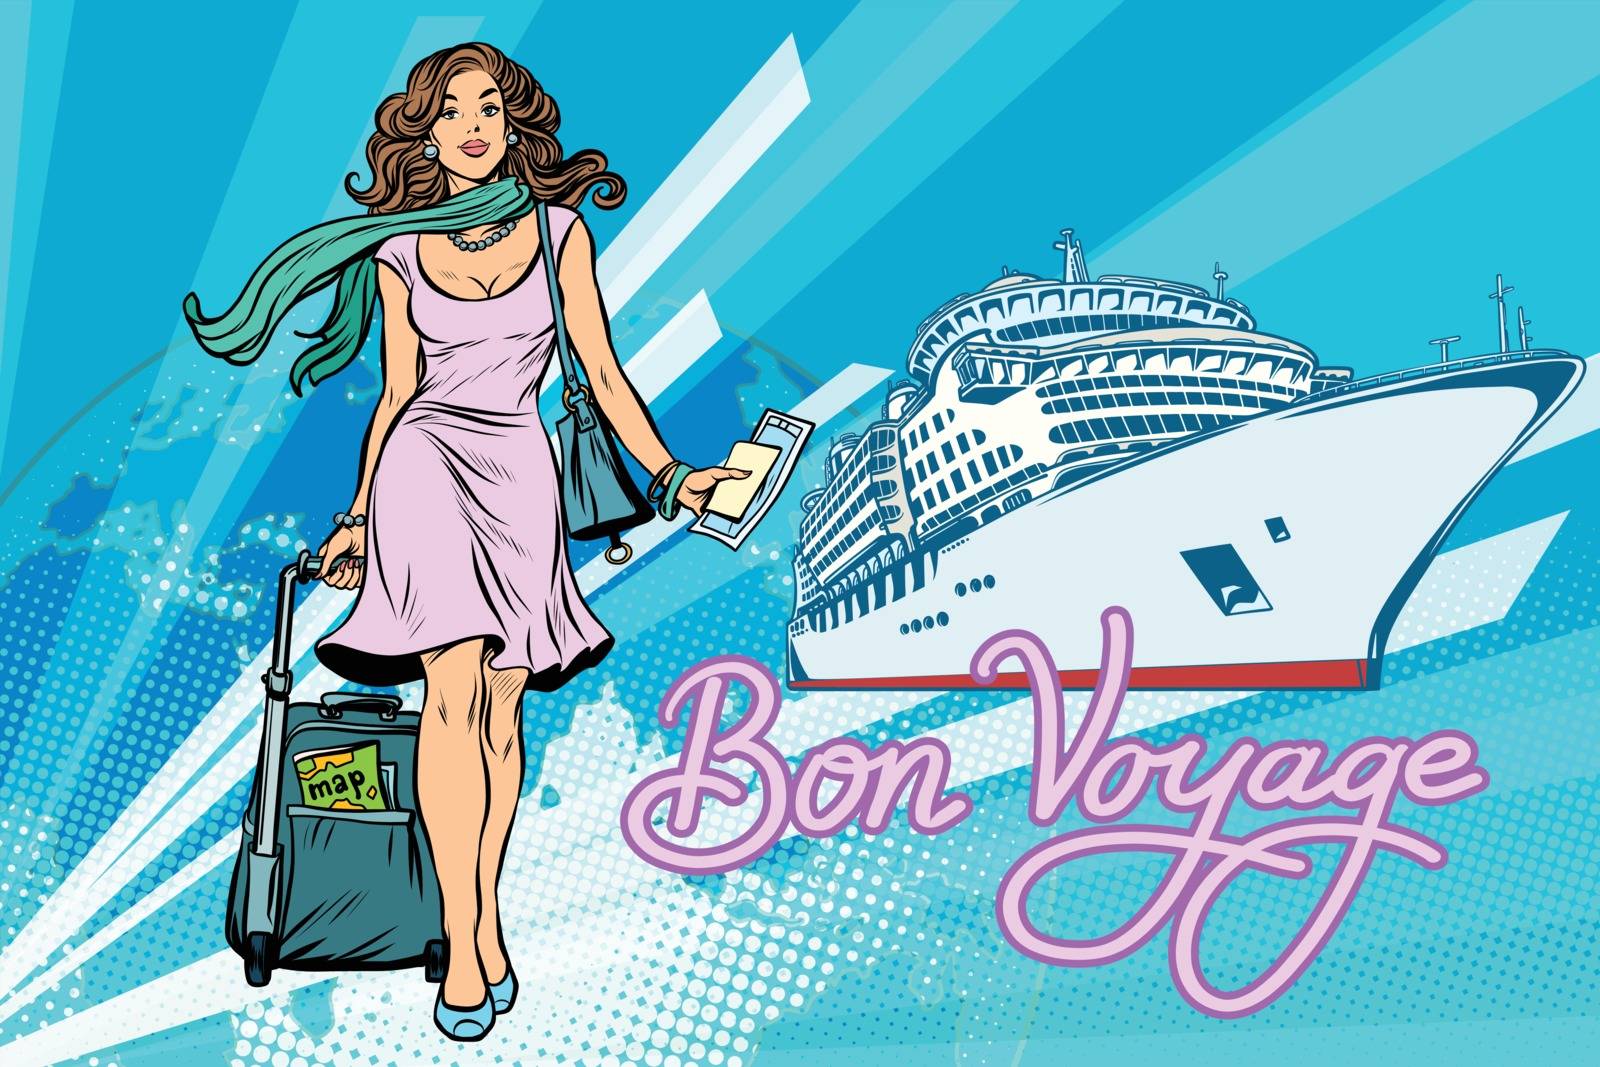 Beautiful woman passenger Bon voyage cruise ship by studiostoks